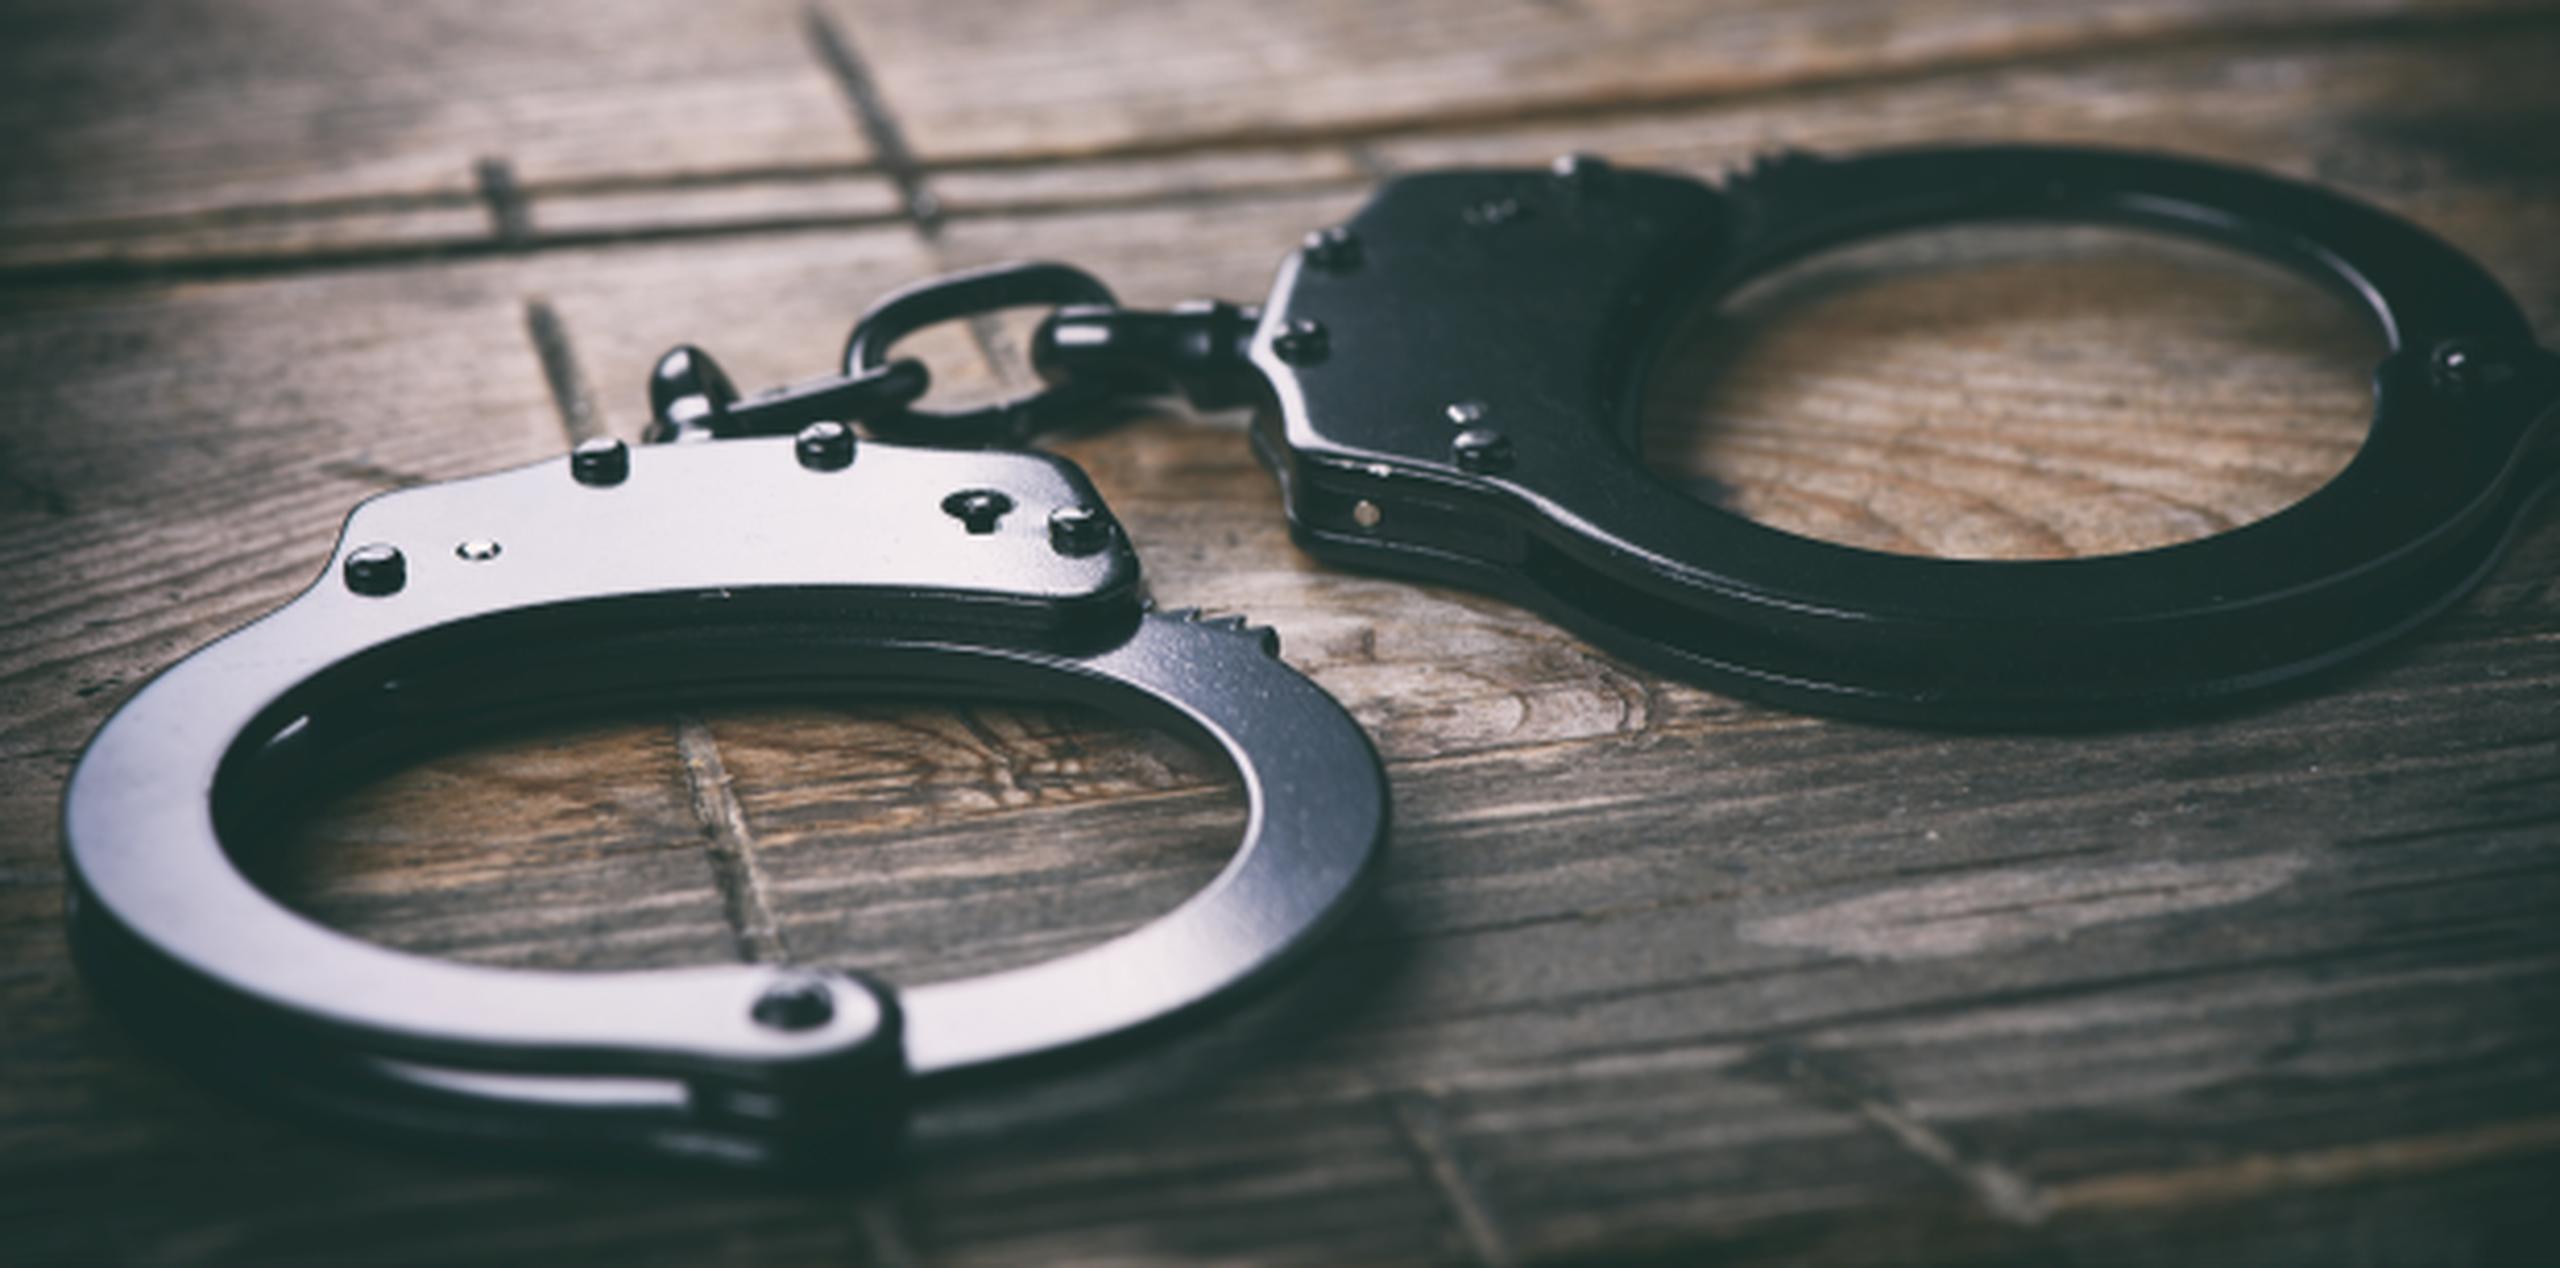 La orden de arresto contra la mujer fue emitida el pasado 1 de mayo. (Shutterstock)